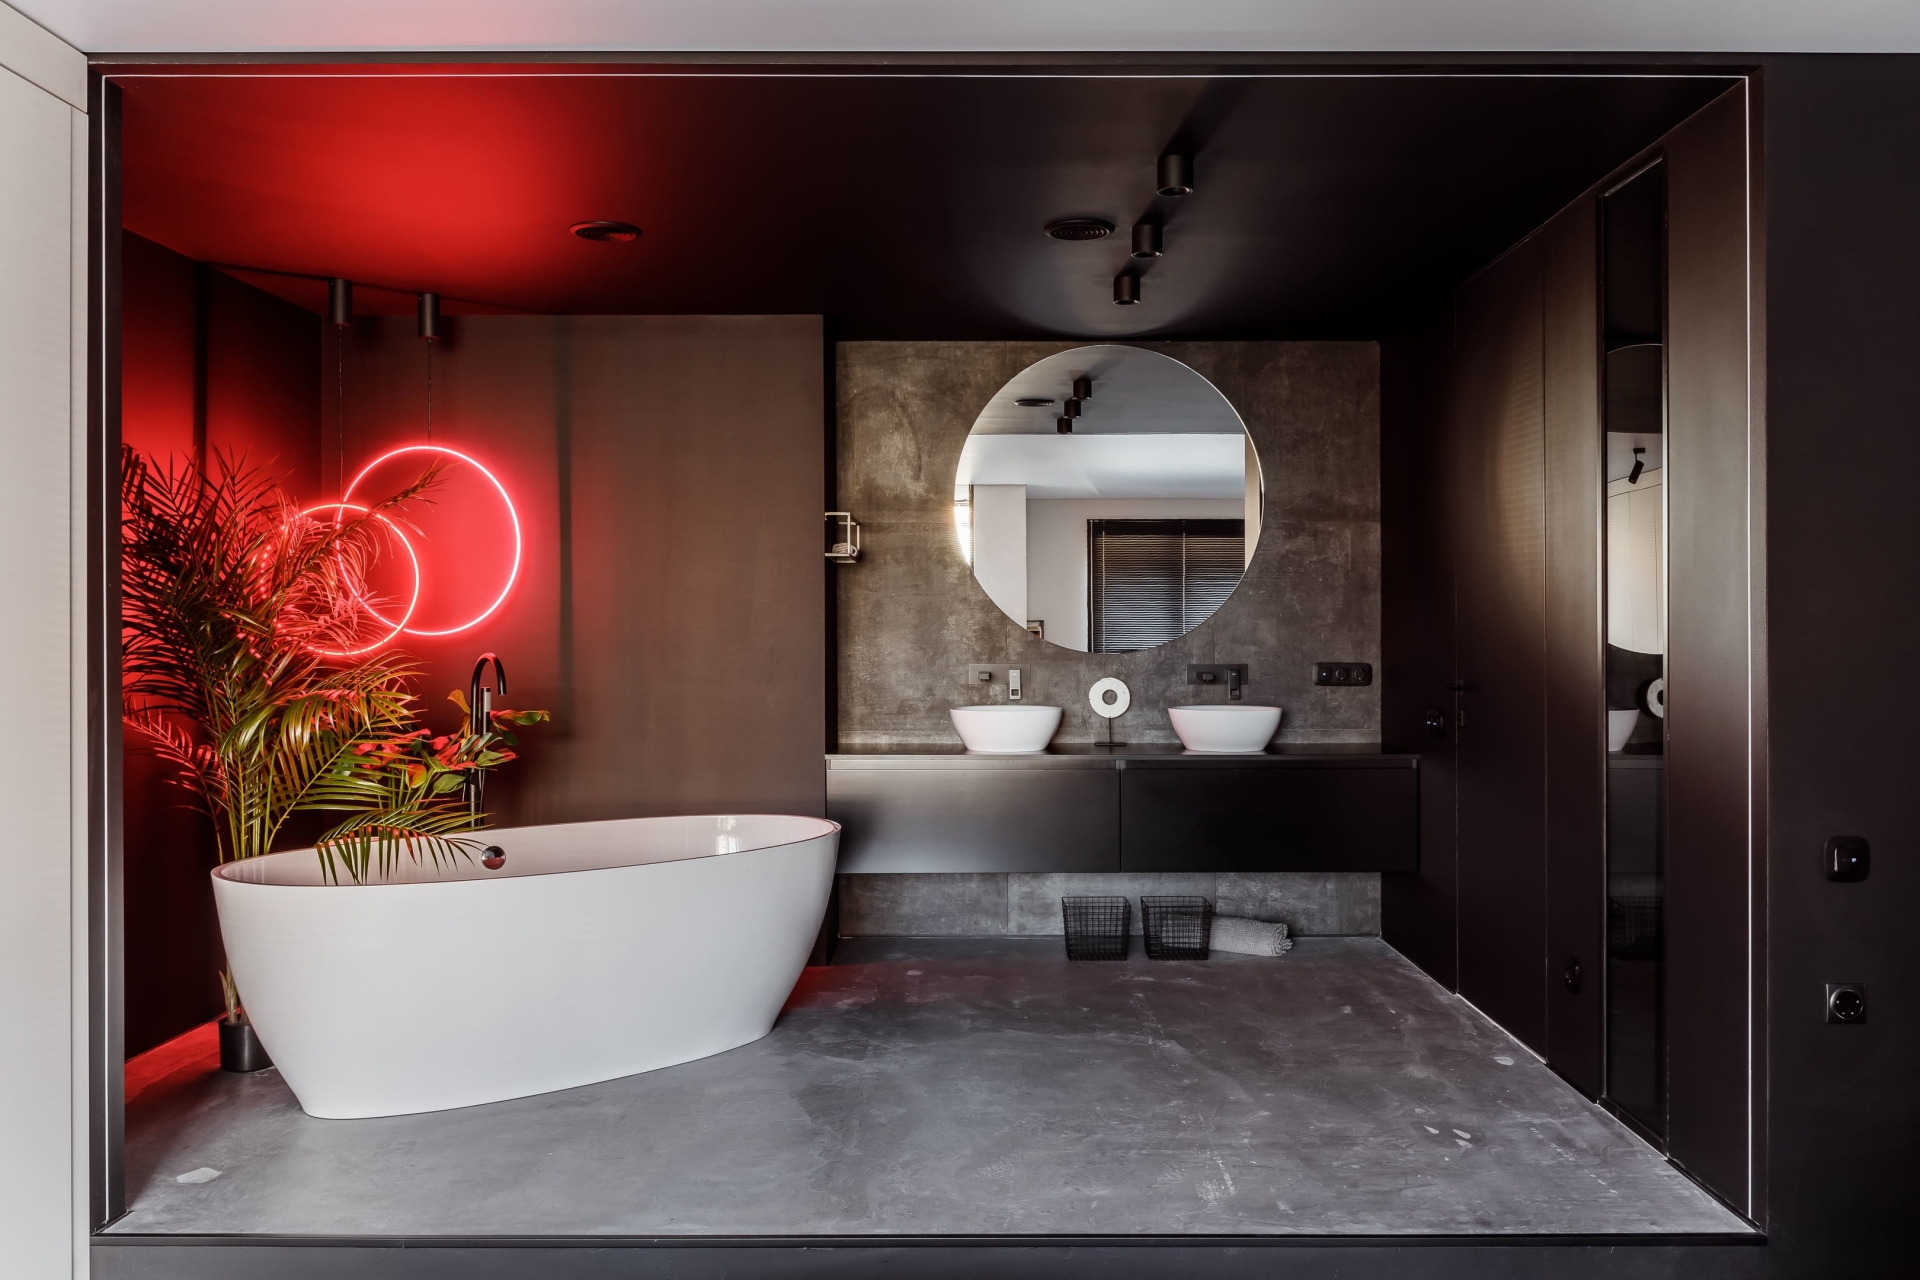 Như đã giới thiệu, phòng tắm của căn hộ thực sự là 'nhân vật chính' bởi vẻ đẹp sang chảnh, không gian rộng rãi (chưa kể diện tích nhà vệ sinh). Sàn lát gạch bê tông, sơn tường và trần màu đen bóng bẩy cùng tấm gương tròn giúp phản chiếu không gian và ánh sáng.